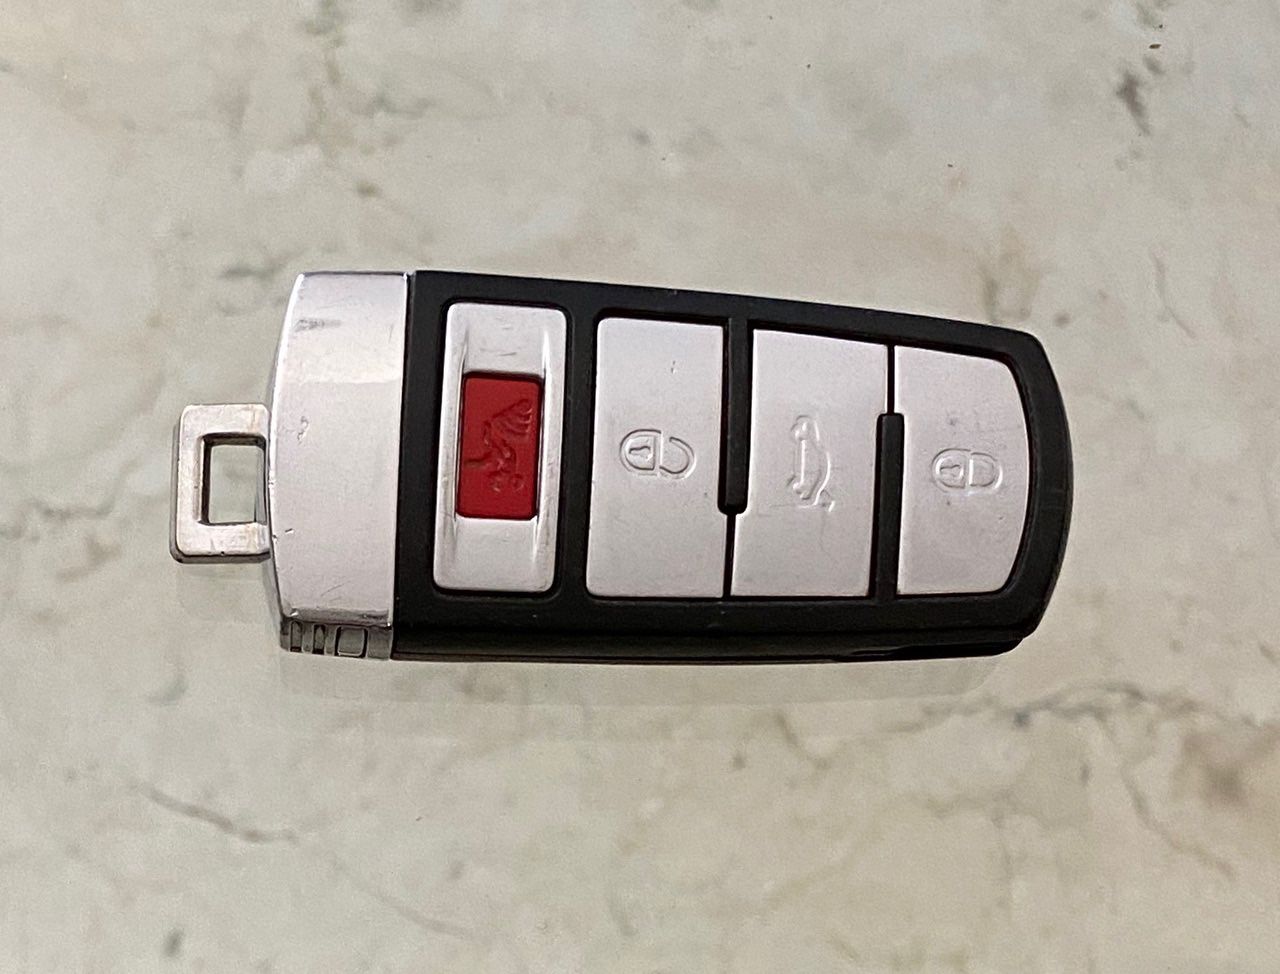 VW Passats key